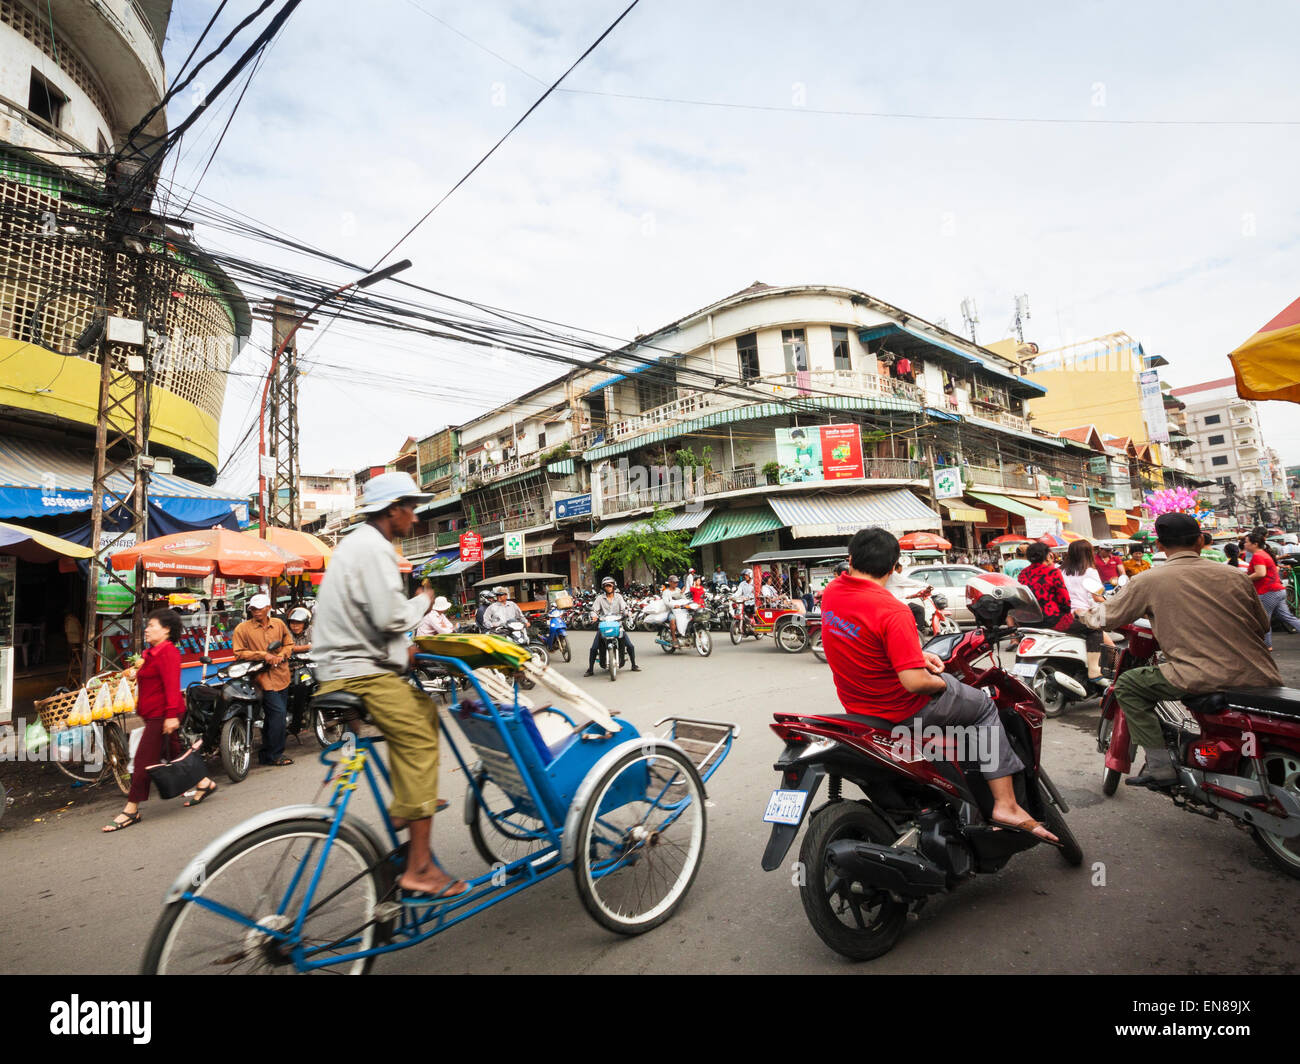 Street scene in Phnom Penh, Cambodia, Asia. Stock Photo